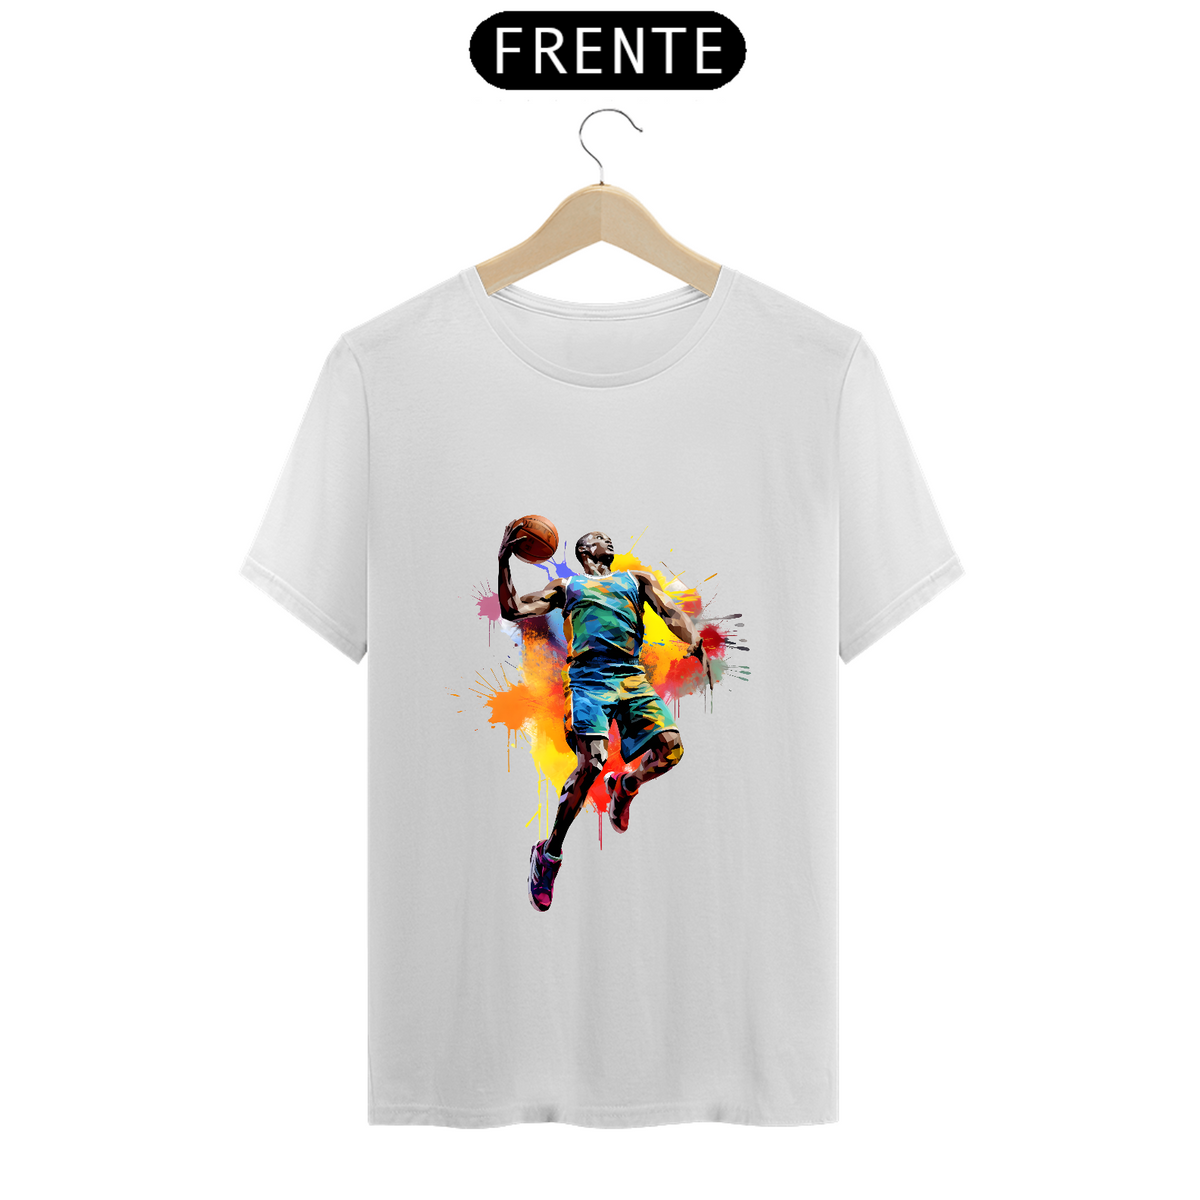 Nome do produto: T-Shirt Prime - Basketball Player